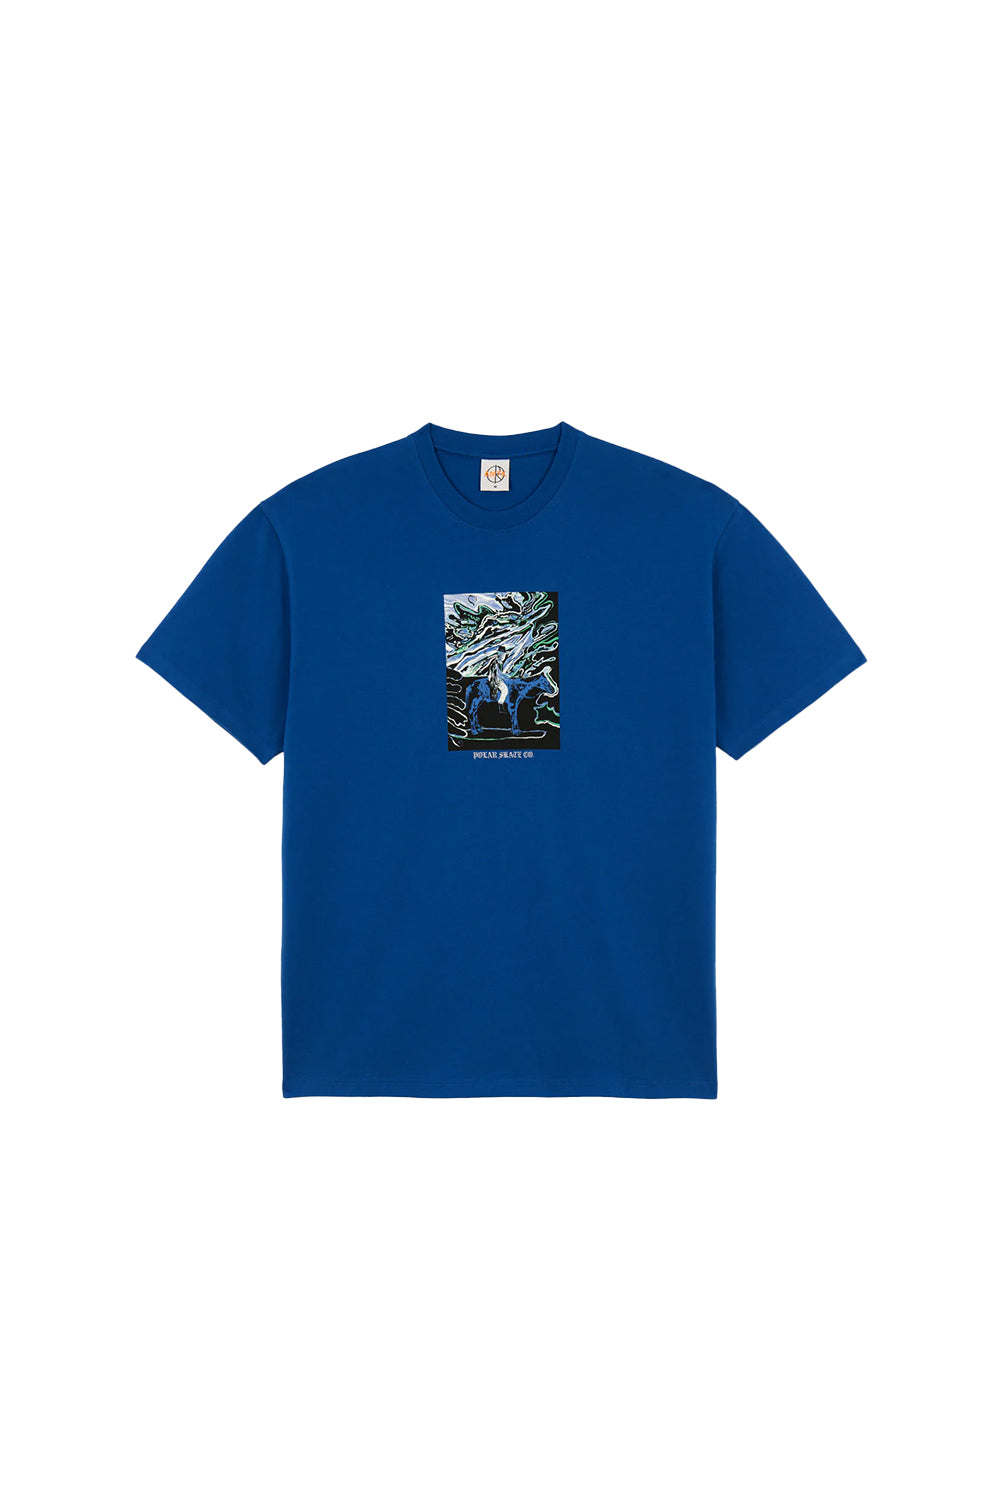 Polar Skate Co Rider T-Shirt